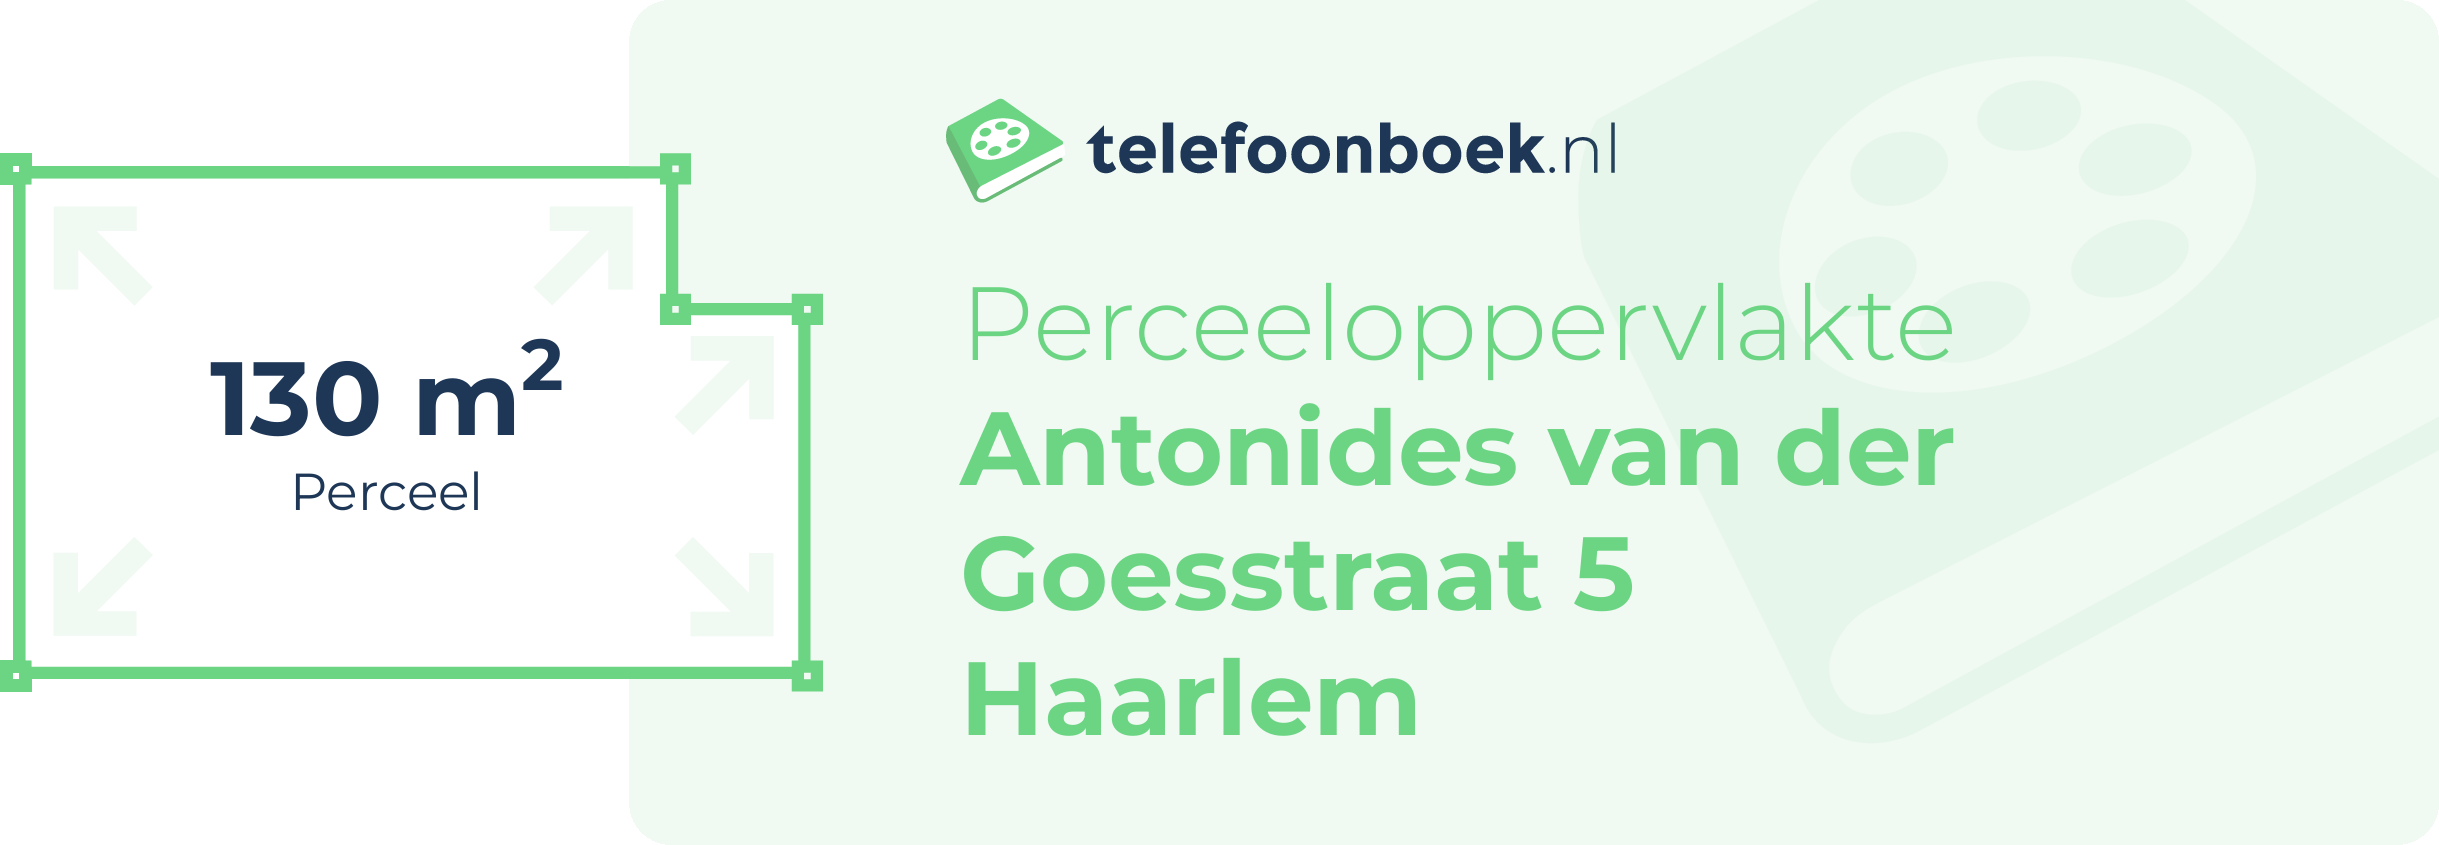 Perceeloppervlakte Antonides Van Der Goesstraat 5 Haarlem